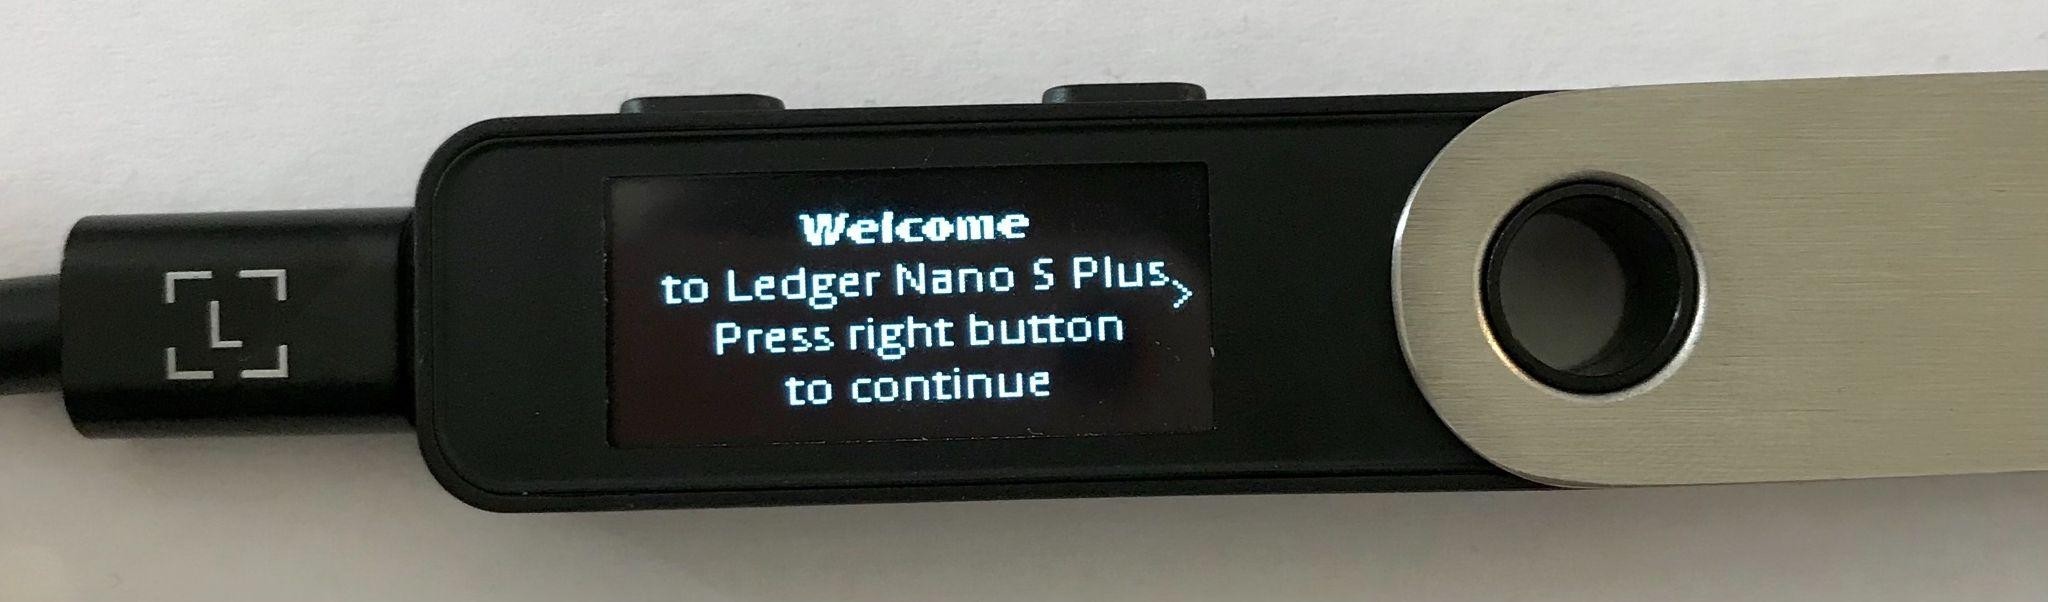 ledger nano s plus welcome